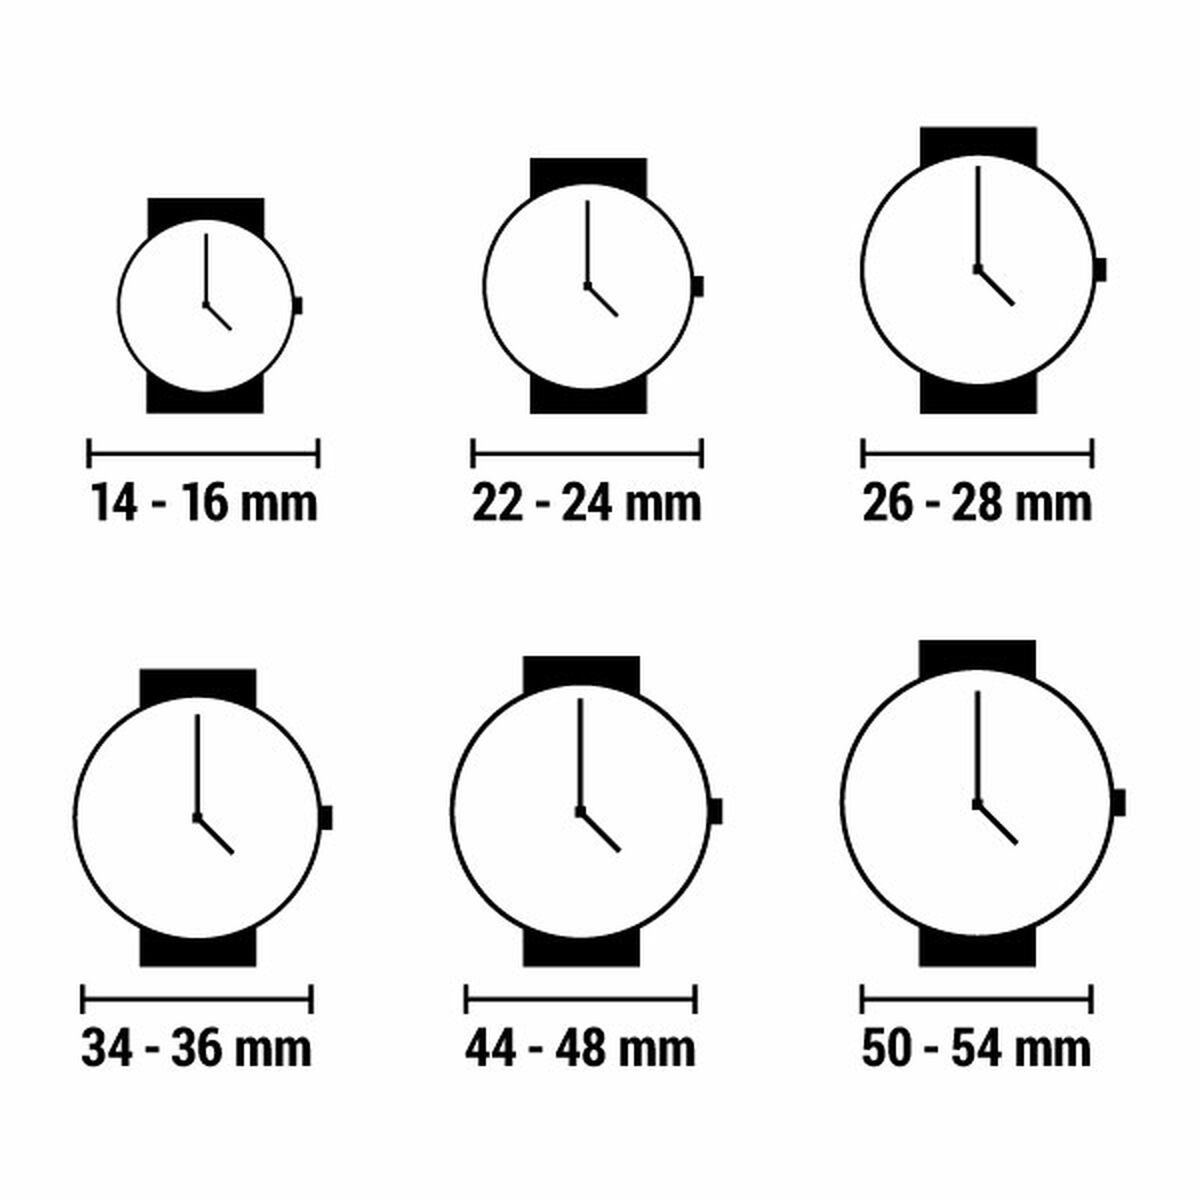 Horloge Dames Watx & Colors RWA1639